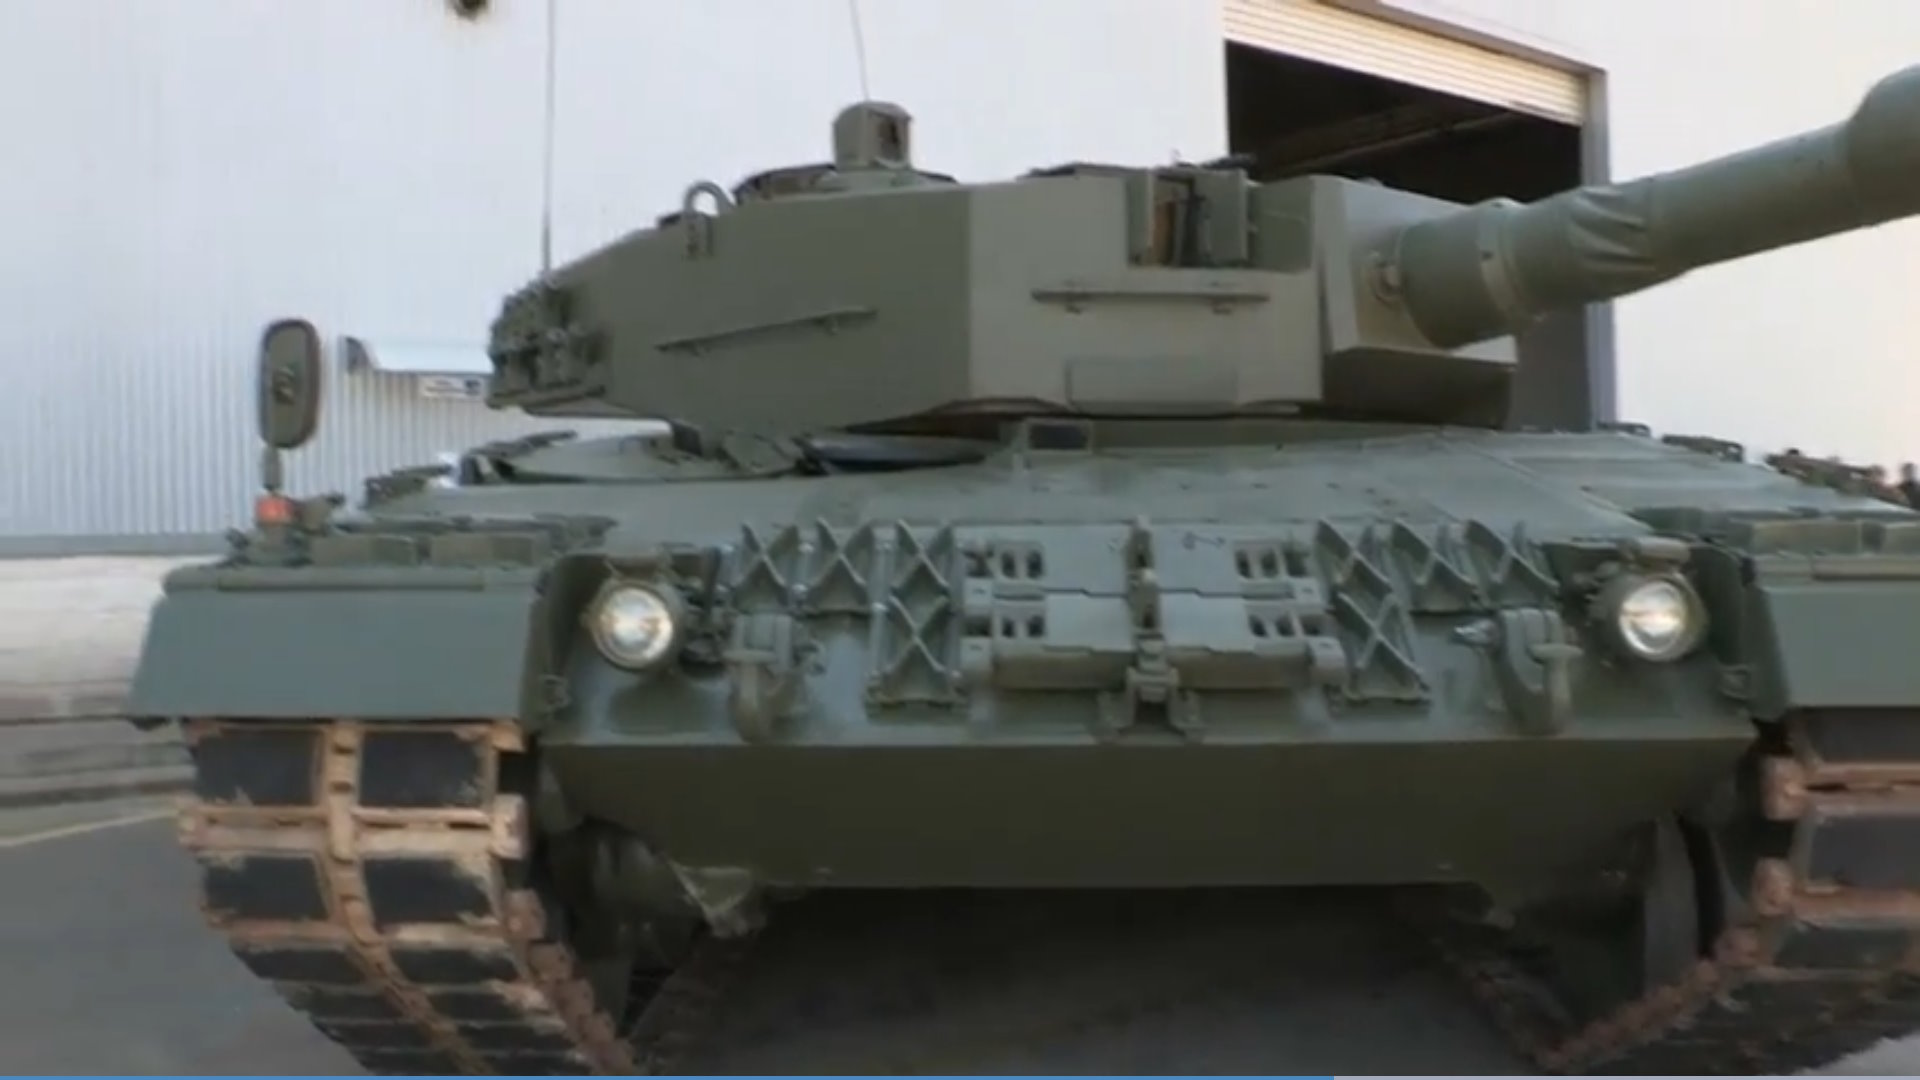 En un tiempo récord Santa Bárbara, filial española de General Dynamics Land Systems, ha puesto a punto 6 de los Leopard 2A4 que el Ejército de Tierra tenía almacenados y que ya están listos para ser entregados a Ucrania en las próximas semanas.